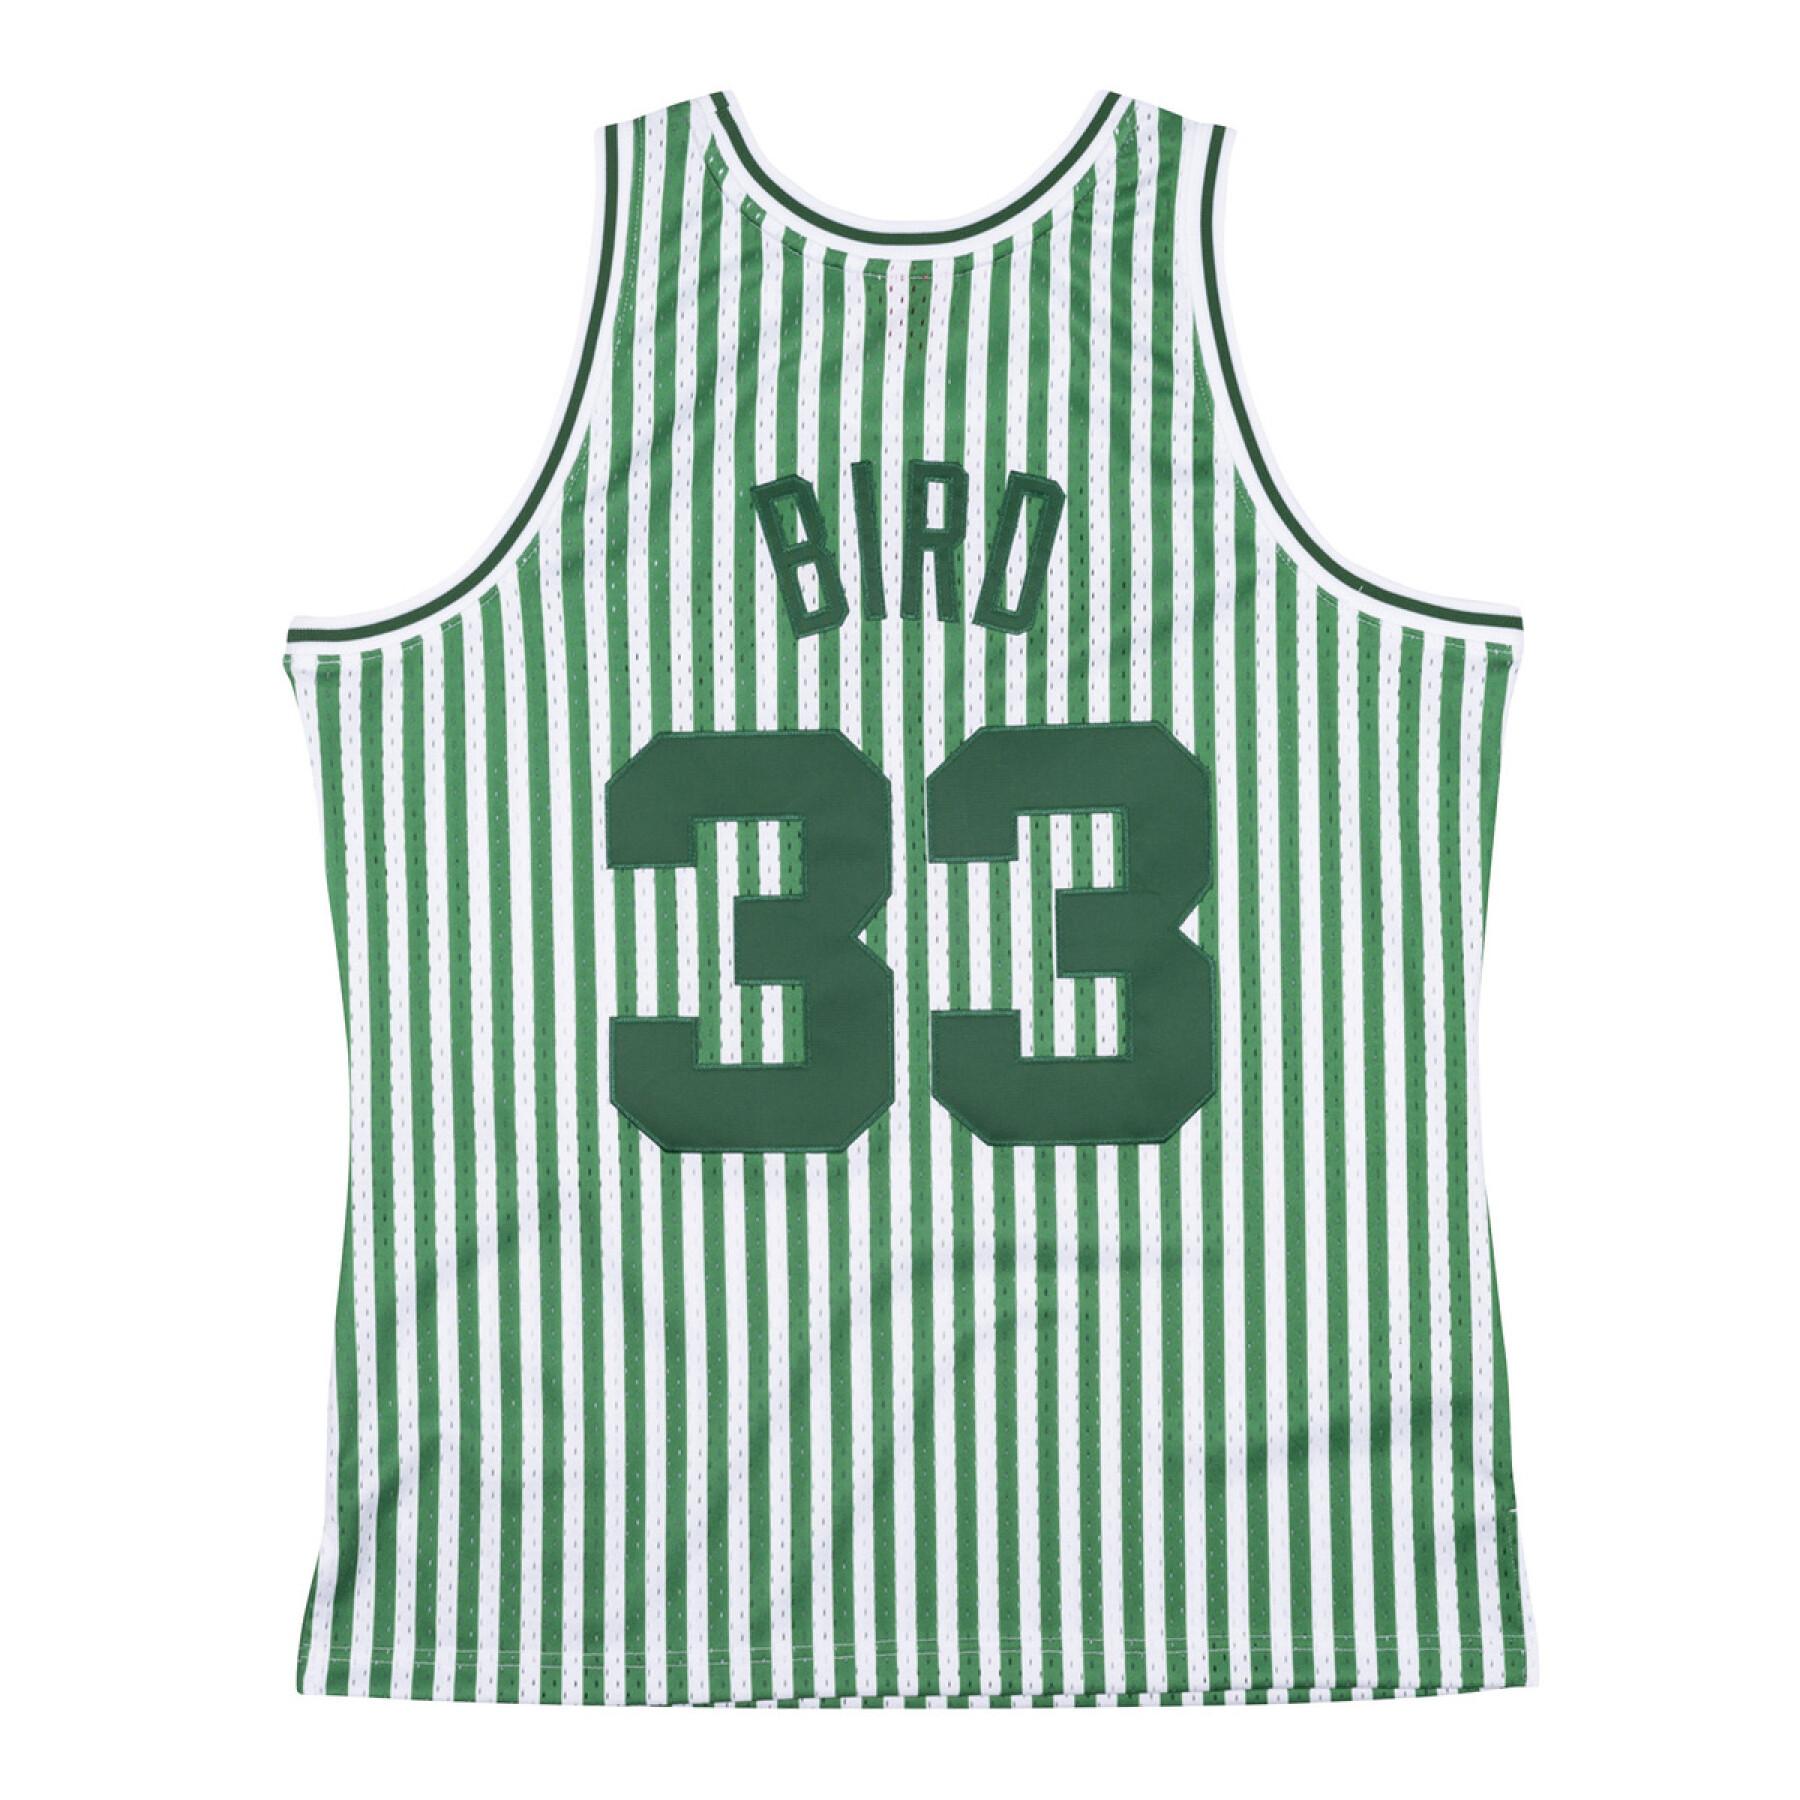 Maillot Boston Celtics striped